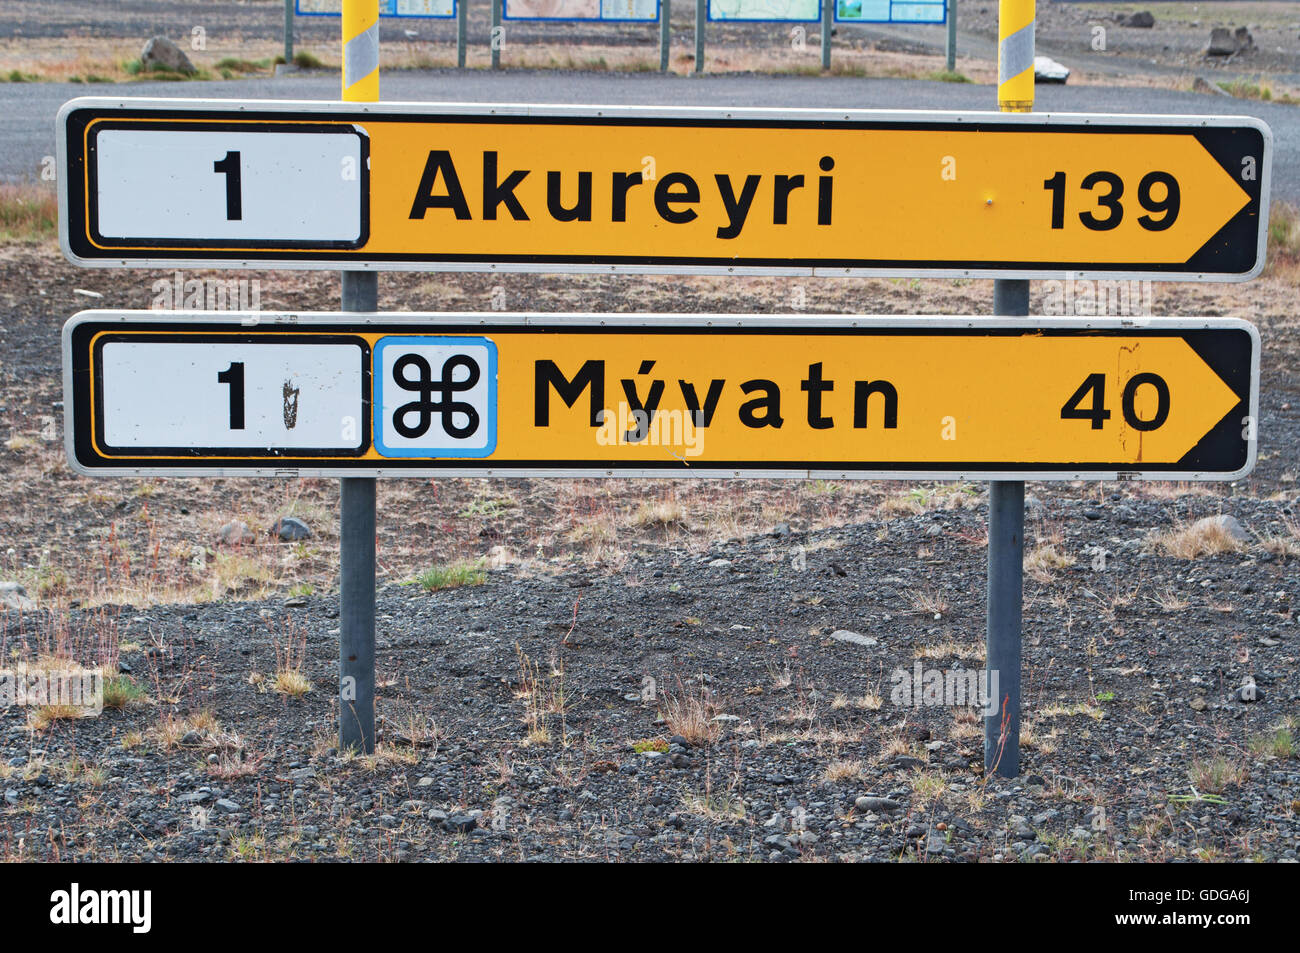 L'Islanda, Europa: in direzione nord, strada segno le indicazioni per la città di Akureyri e per la regione di Myvatn sulla Route 1, il famoso anello stradale Foto Stock